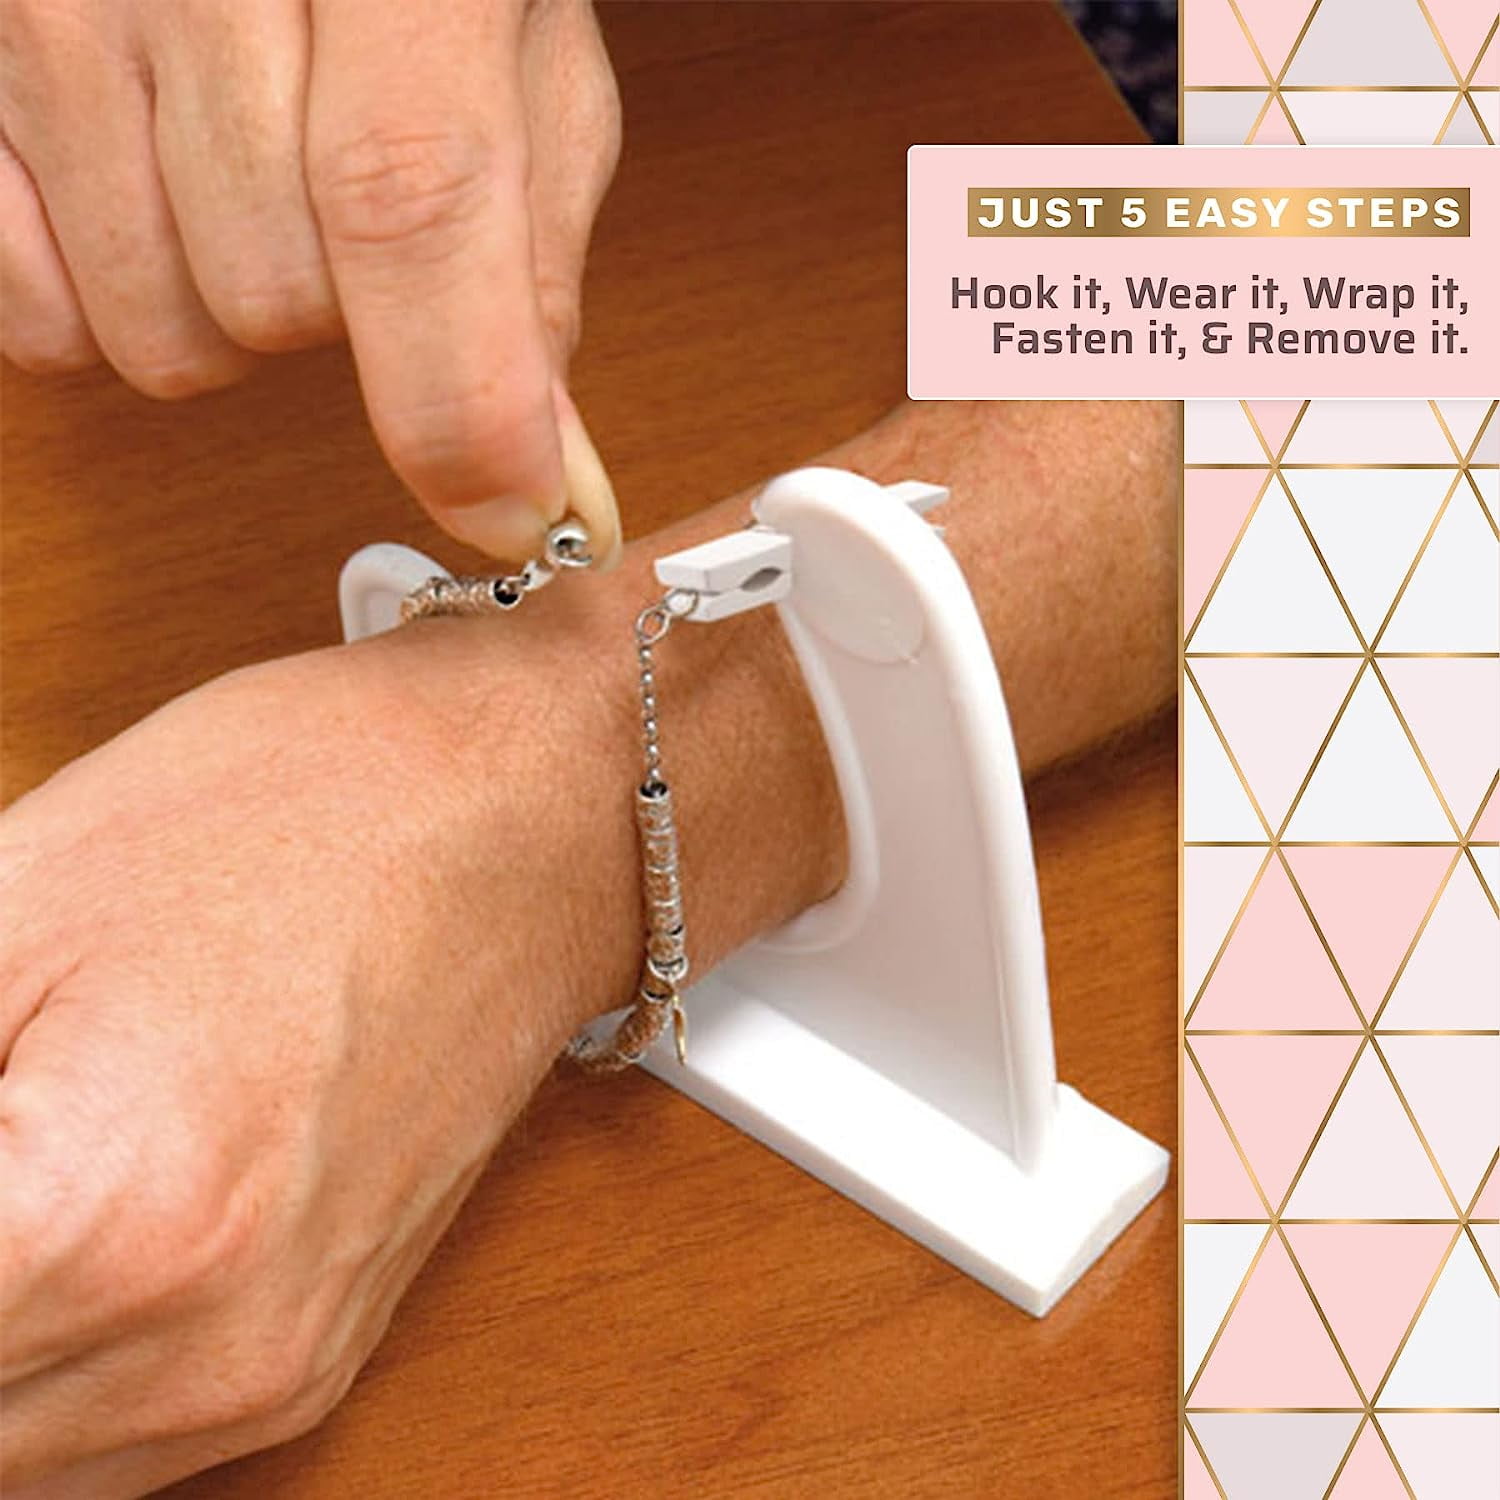 Bracelet Helper Tool to Help Fasten Bracelets *New* - jewelry - by owner -  sale - craigslist